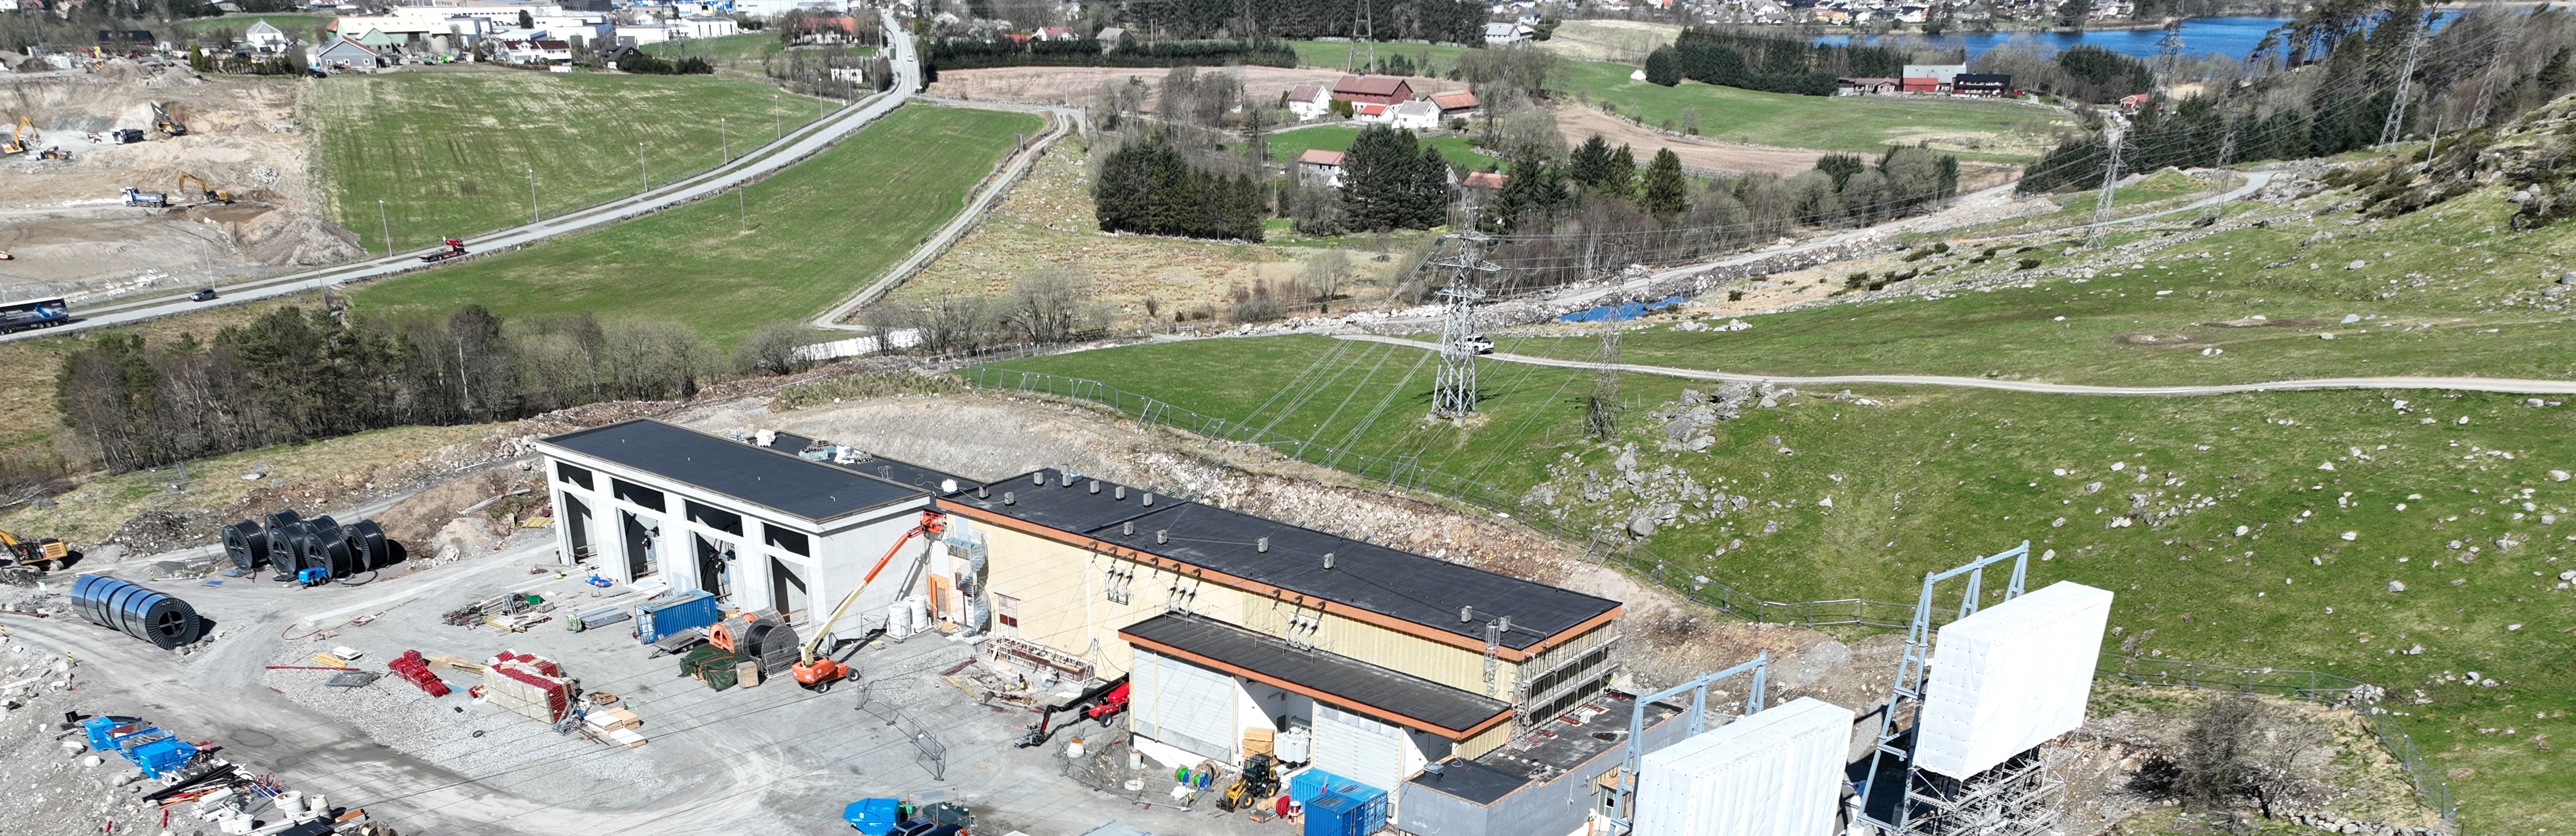 Dronefoto som viser nytt påbygg med transformatornisjer til venstre og den gamle delen til høyre. 